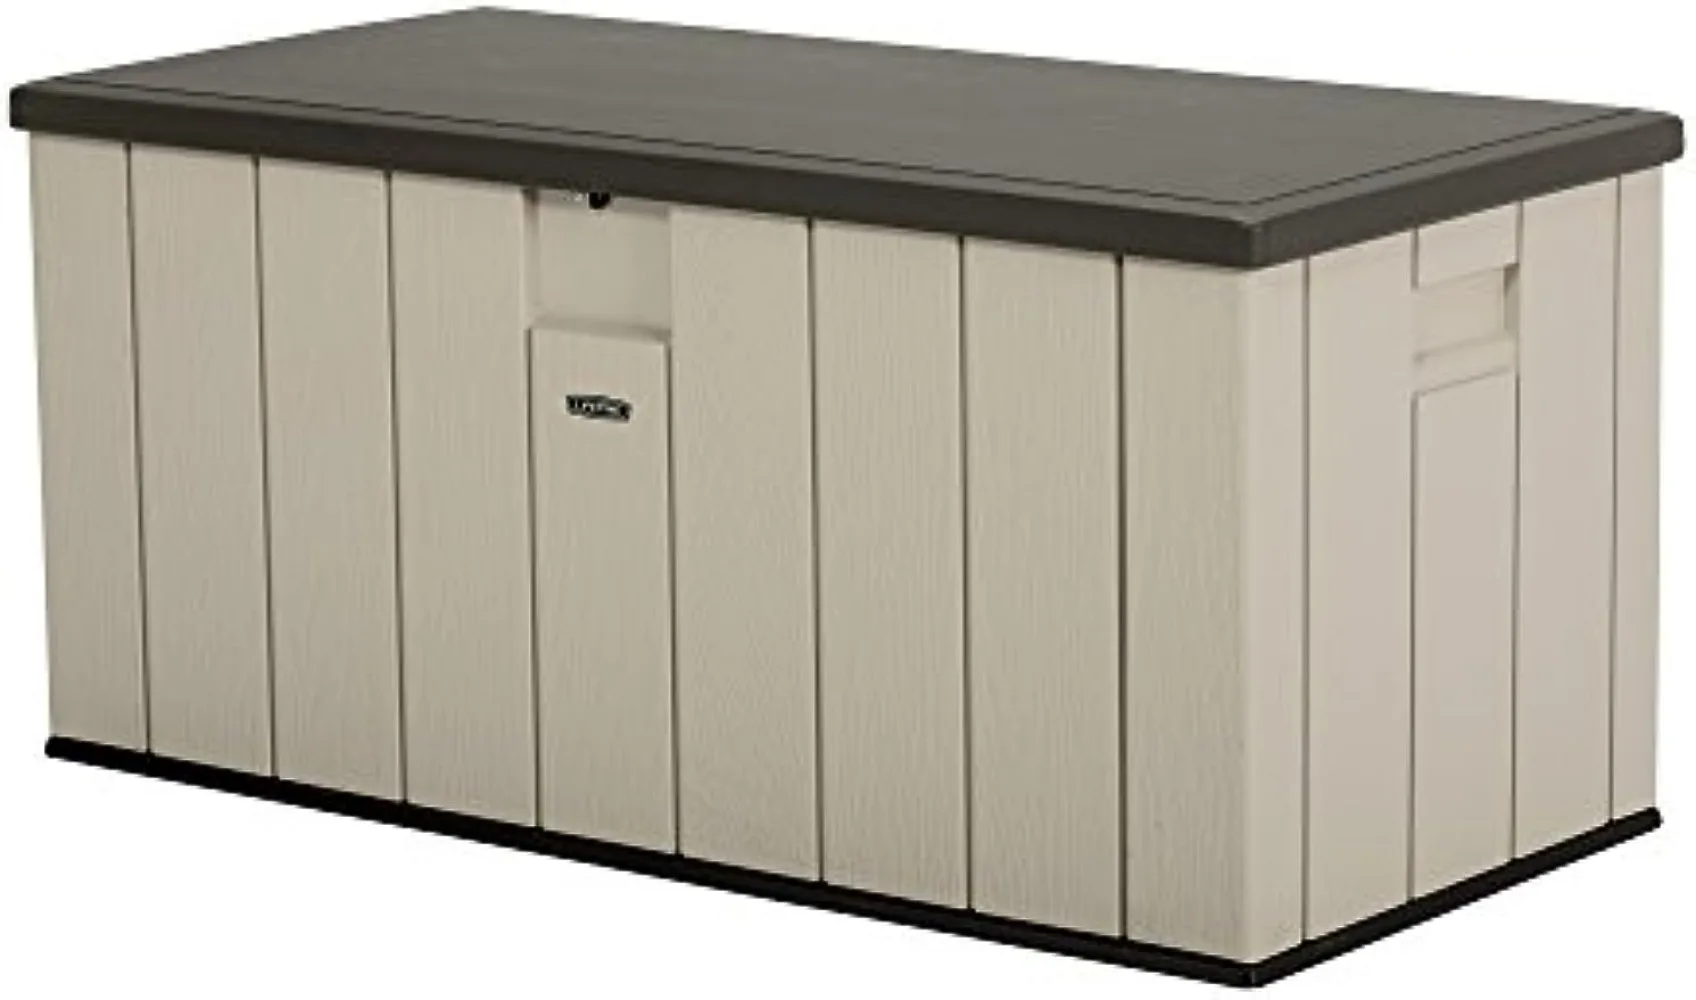 

Lifetime 60254 Heavy-Duty Outdoor Storage Deck Box, 150 Gallon, Desert Sand/Brown